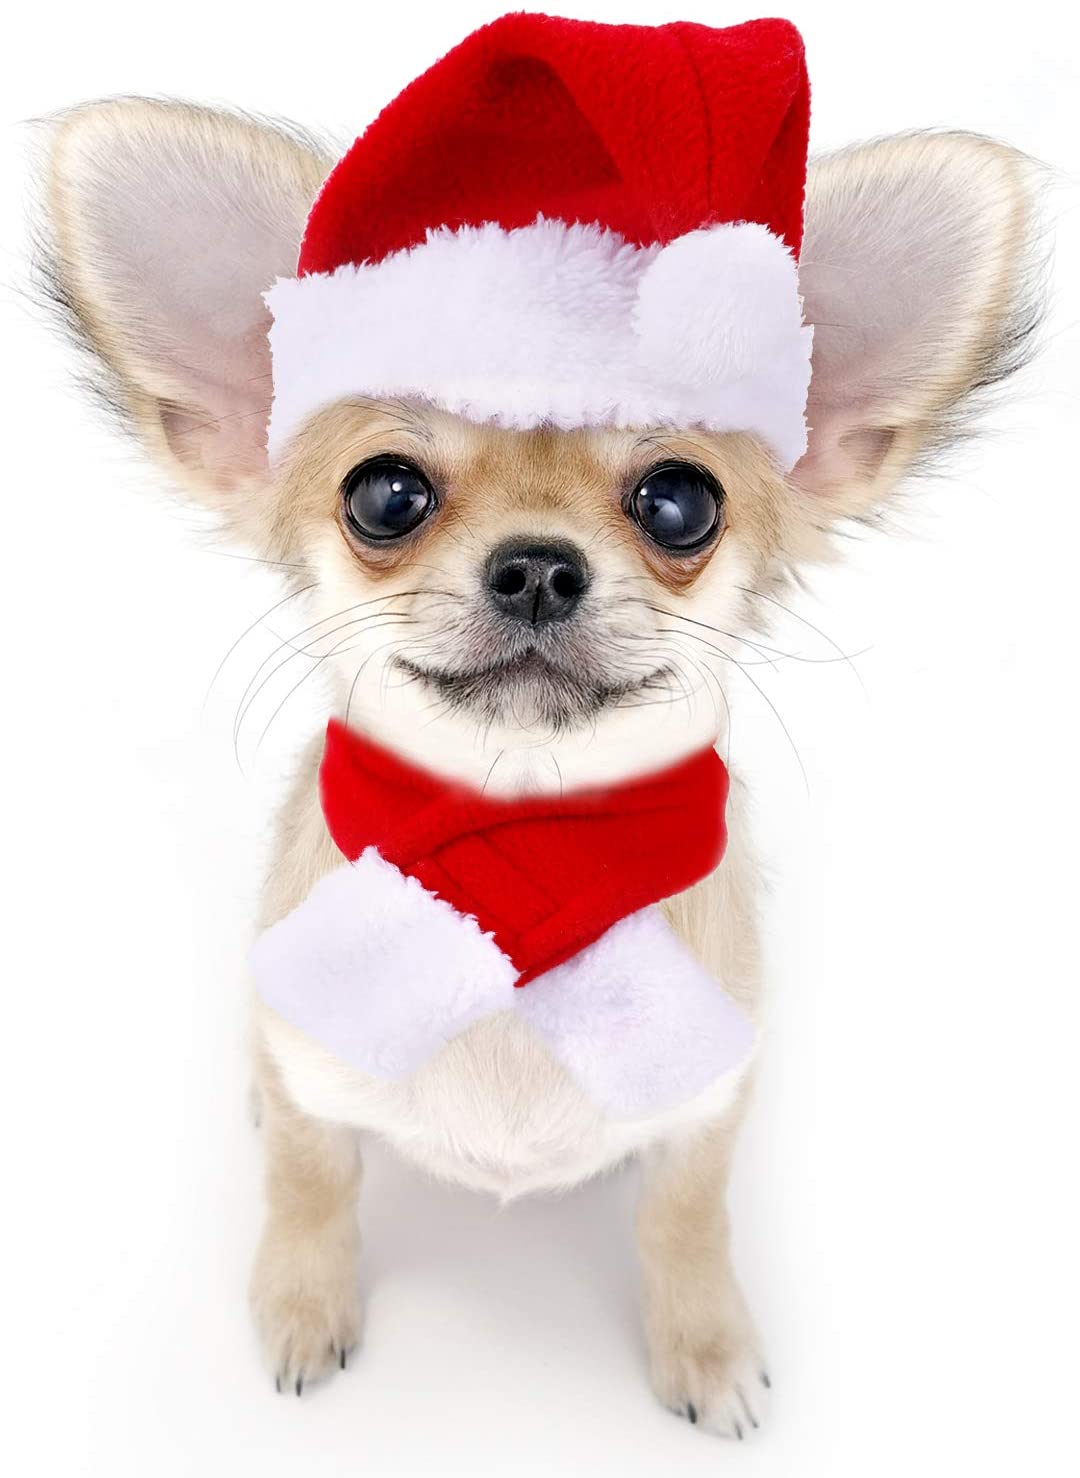  Gorra de Papá Noel de Navidad Ajustable de Mascotas, Capa, Bufanda y Collar de Pajarita Disfraz de Navidad para Cachorro Gatito Gatos Pequeños Perros Mascotas 